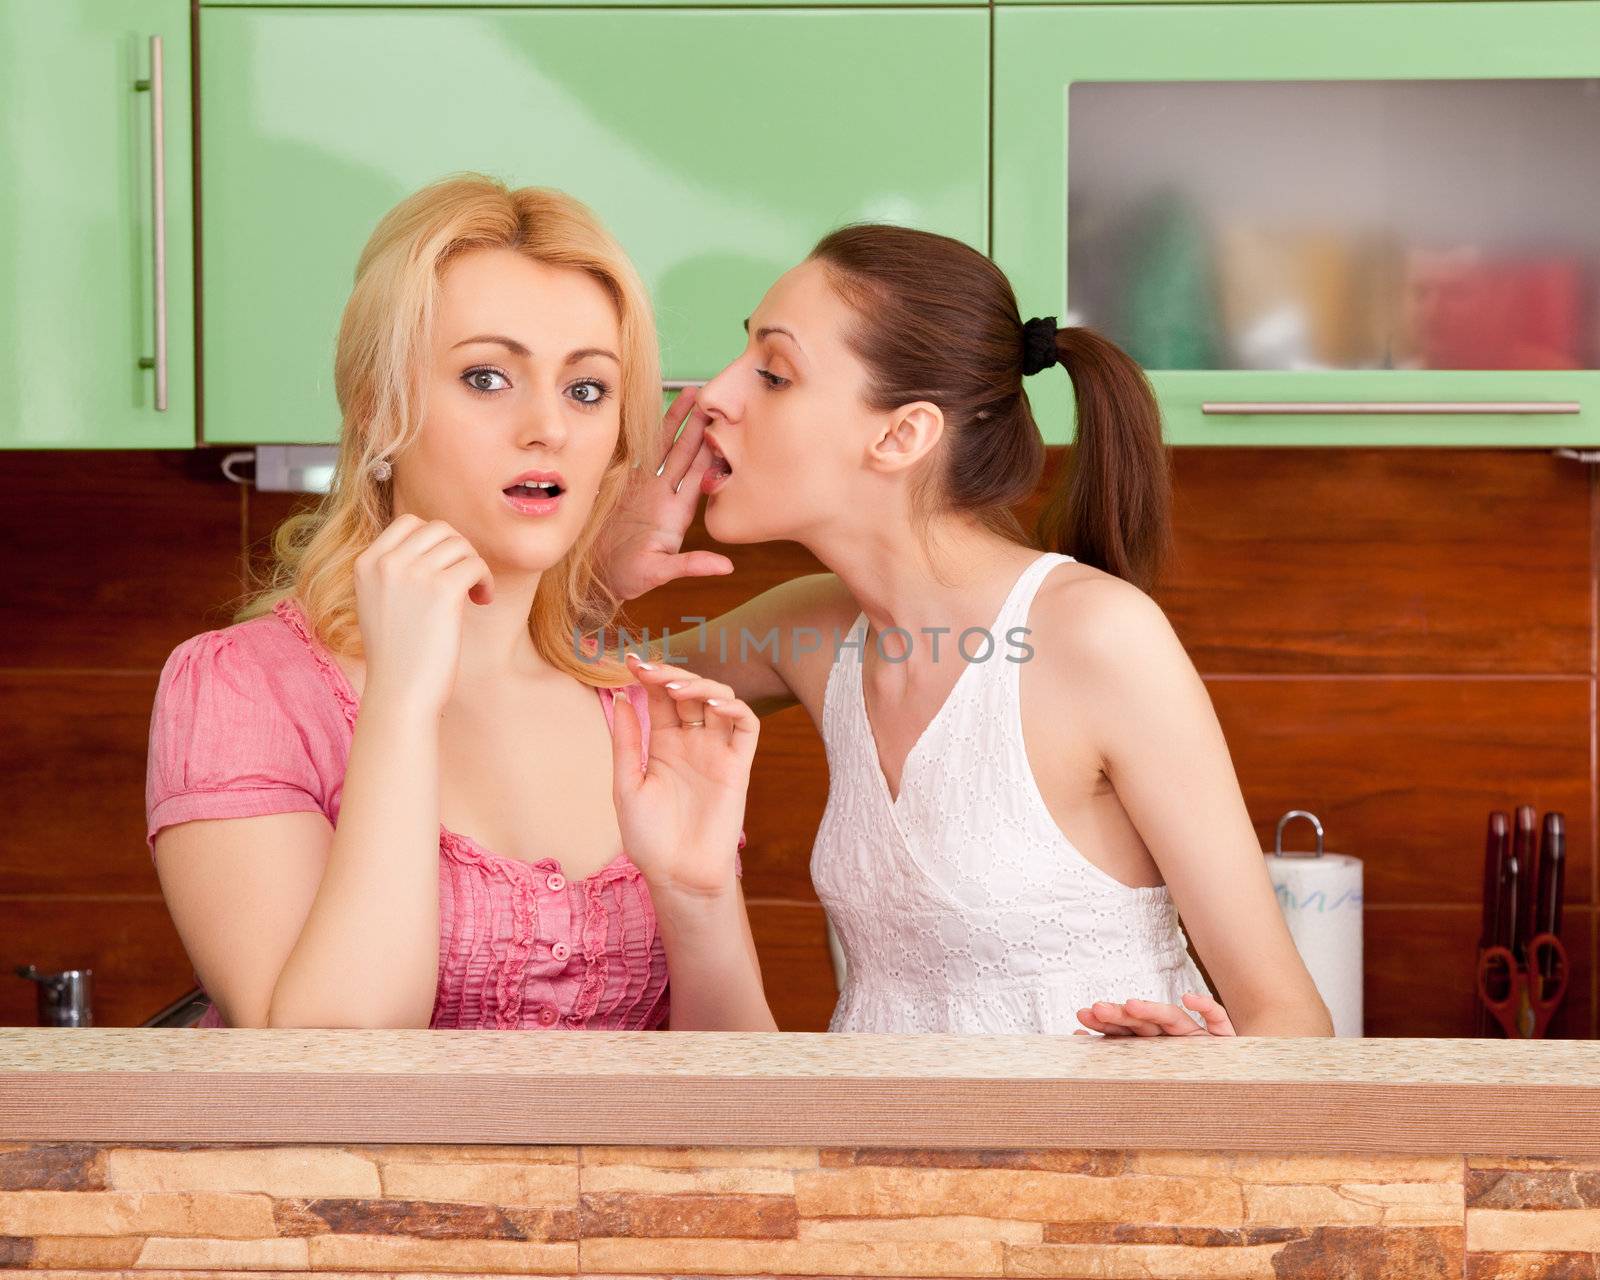 friends talking in the kitchen by Sergieiev